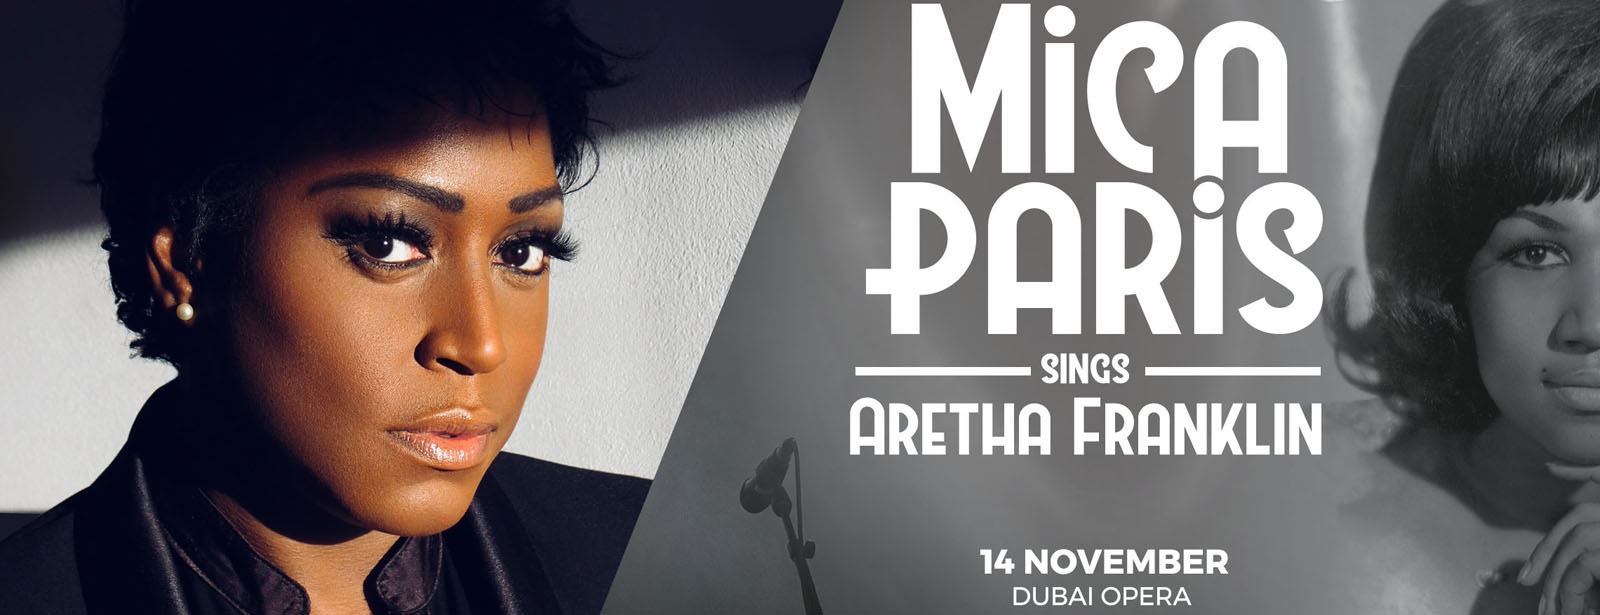 Mica Paris sings Aretha Franklin - Coming Soon in UAE